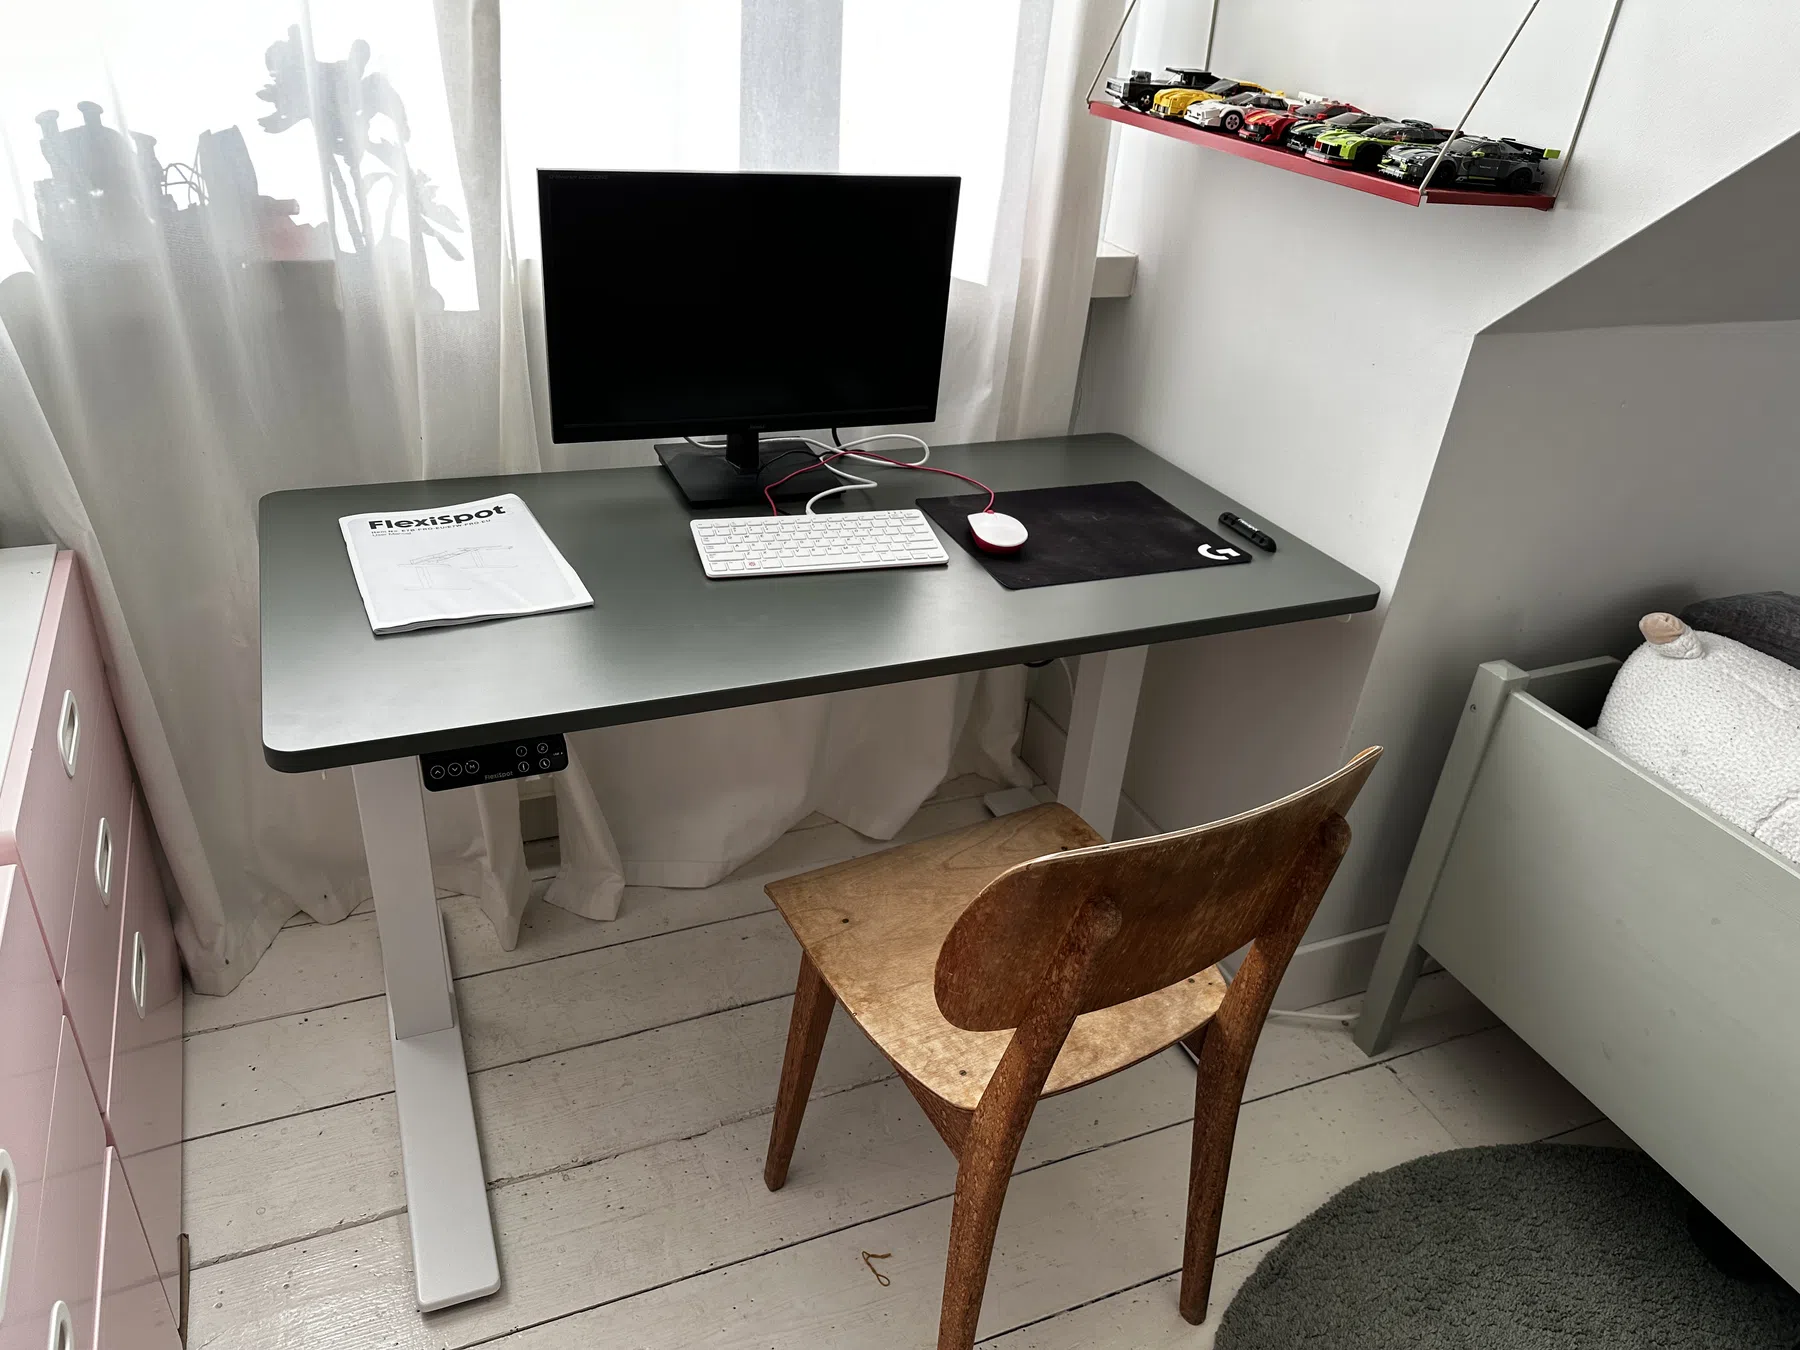 Dit verstelbare bureau zet je zelf in elkaar en geeft IKEA het nakijken